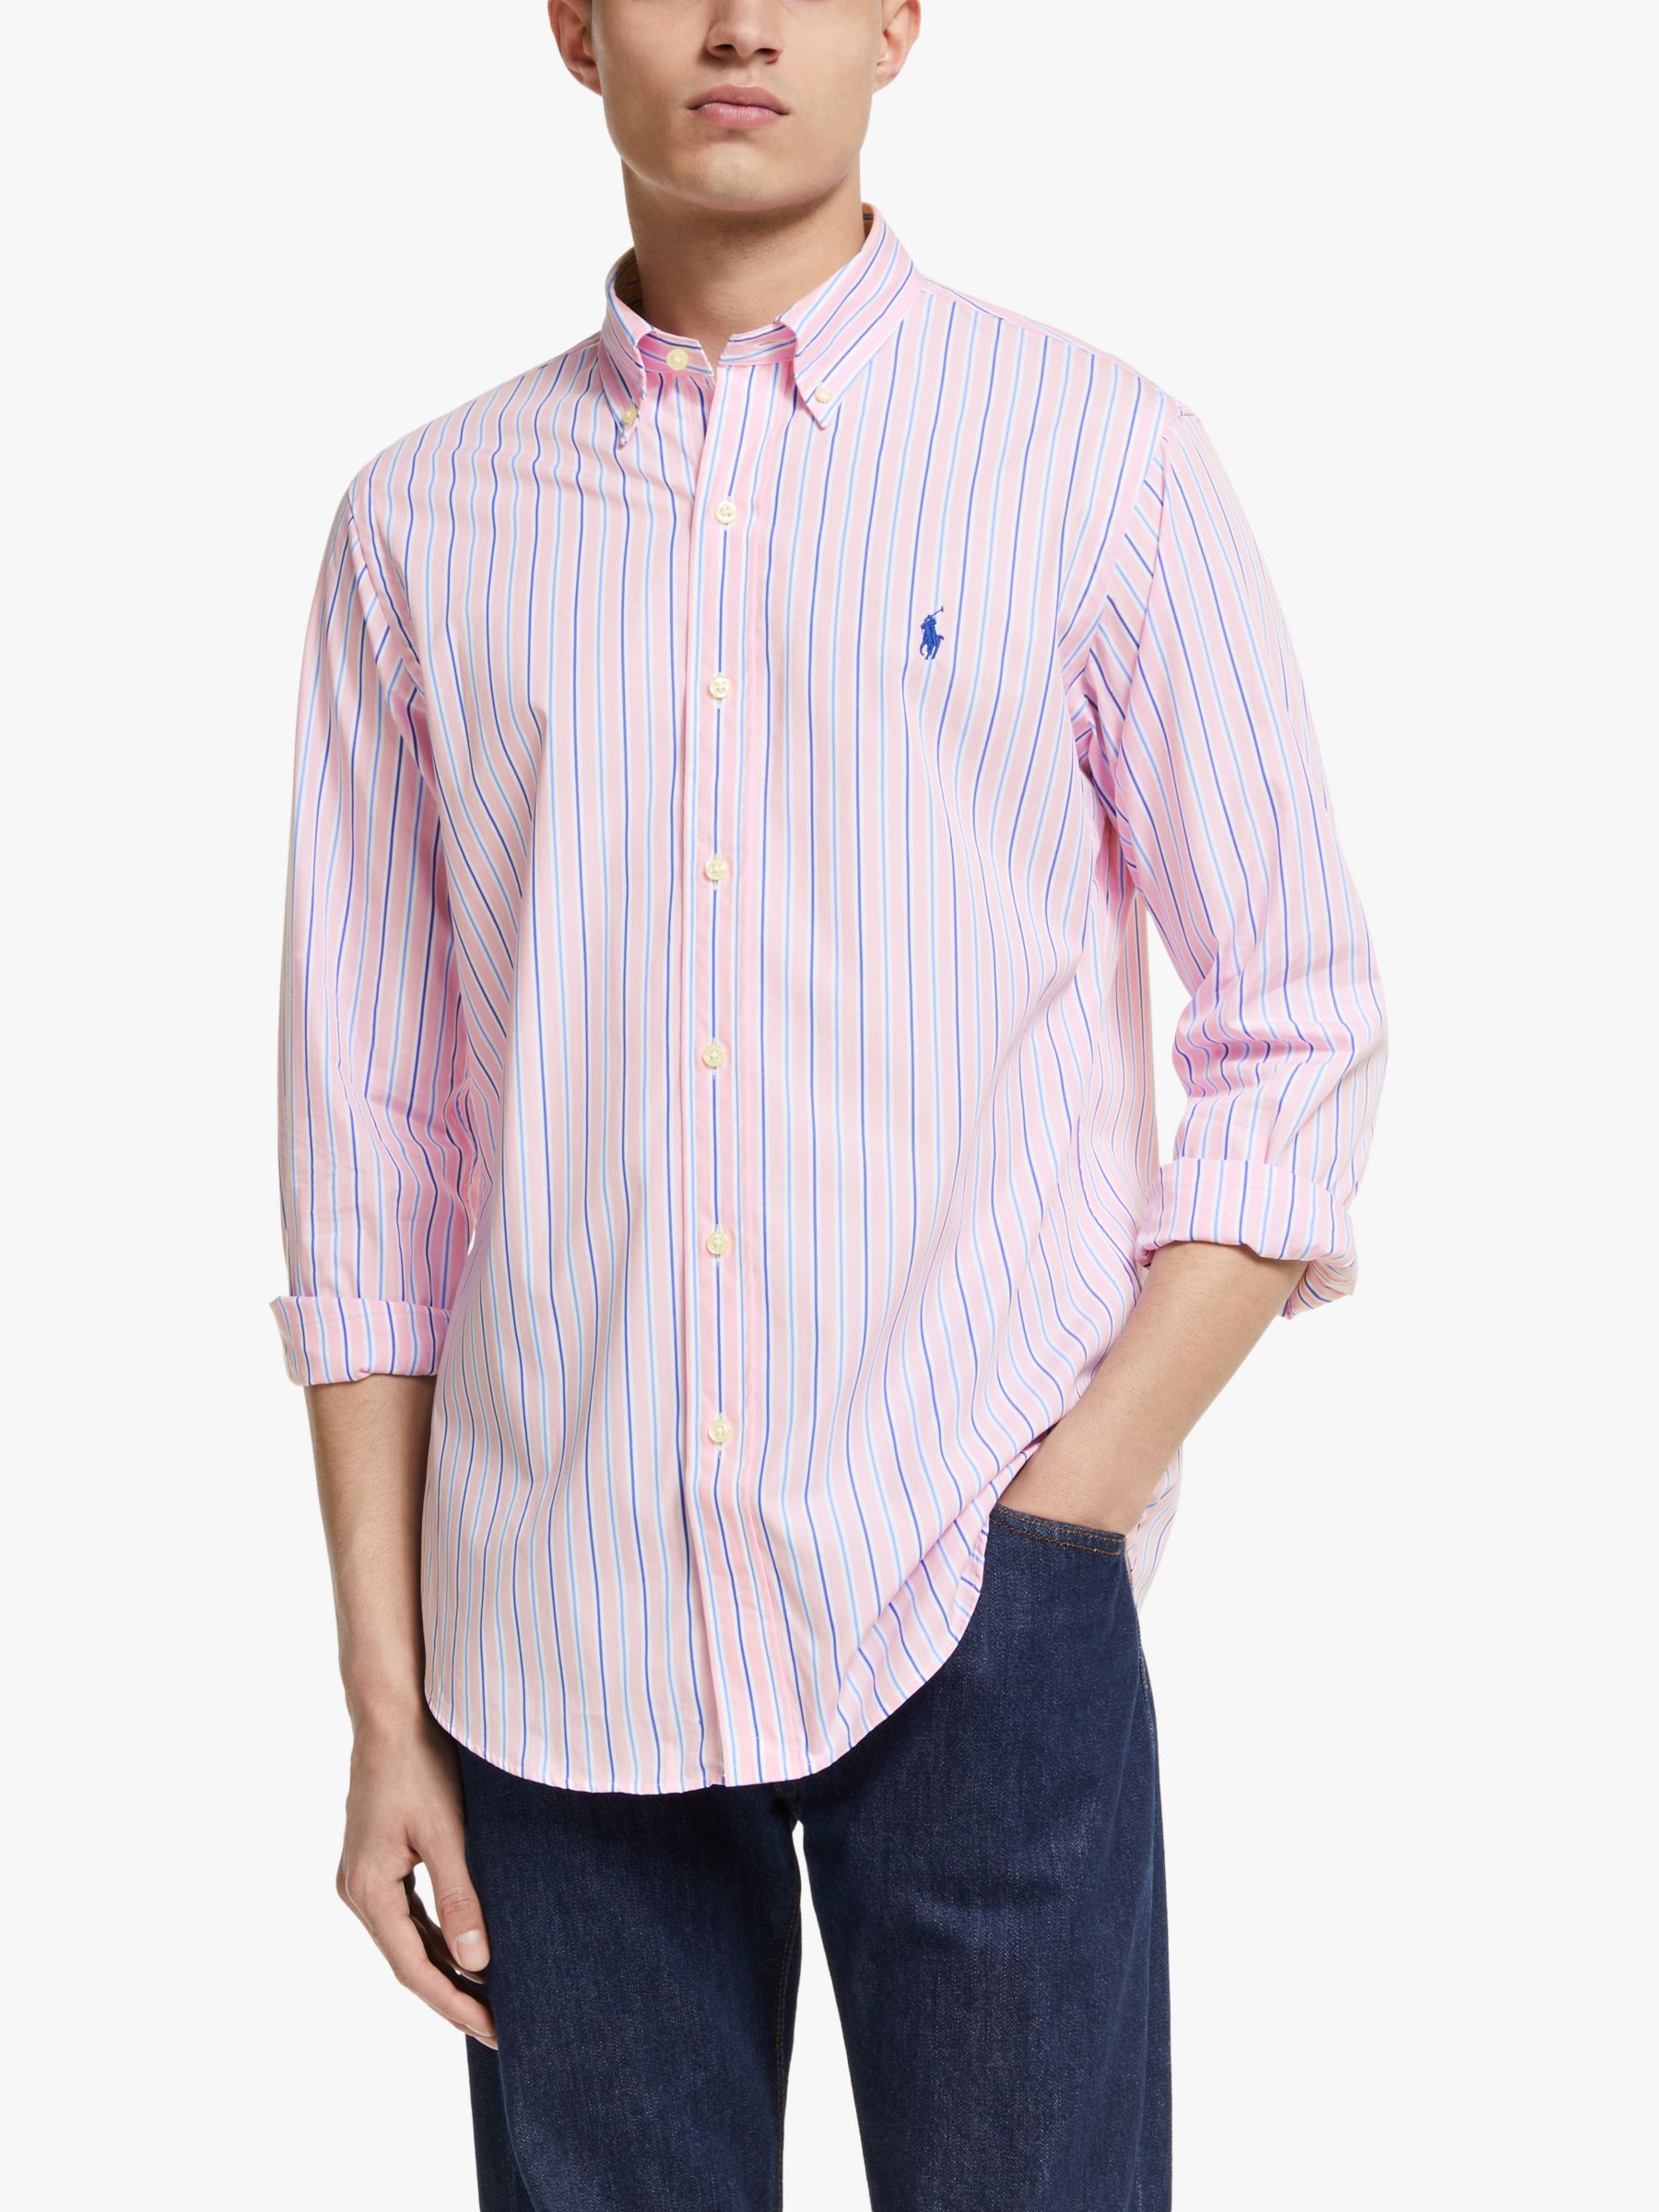 ralph lauren custom fit striped shirt